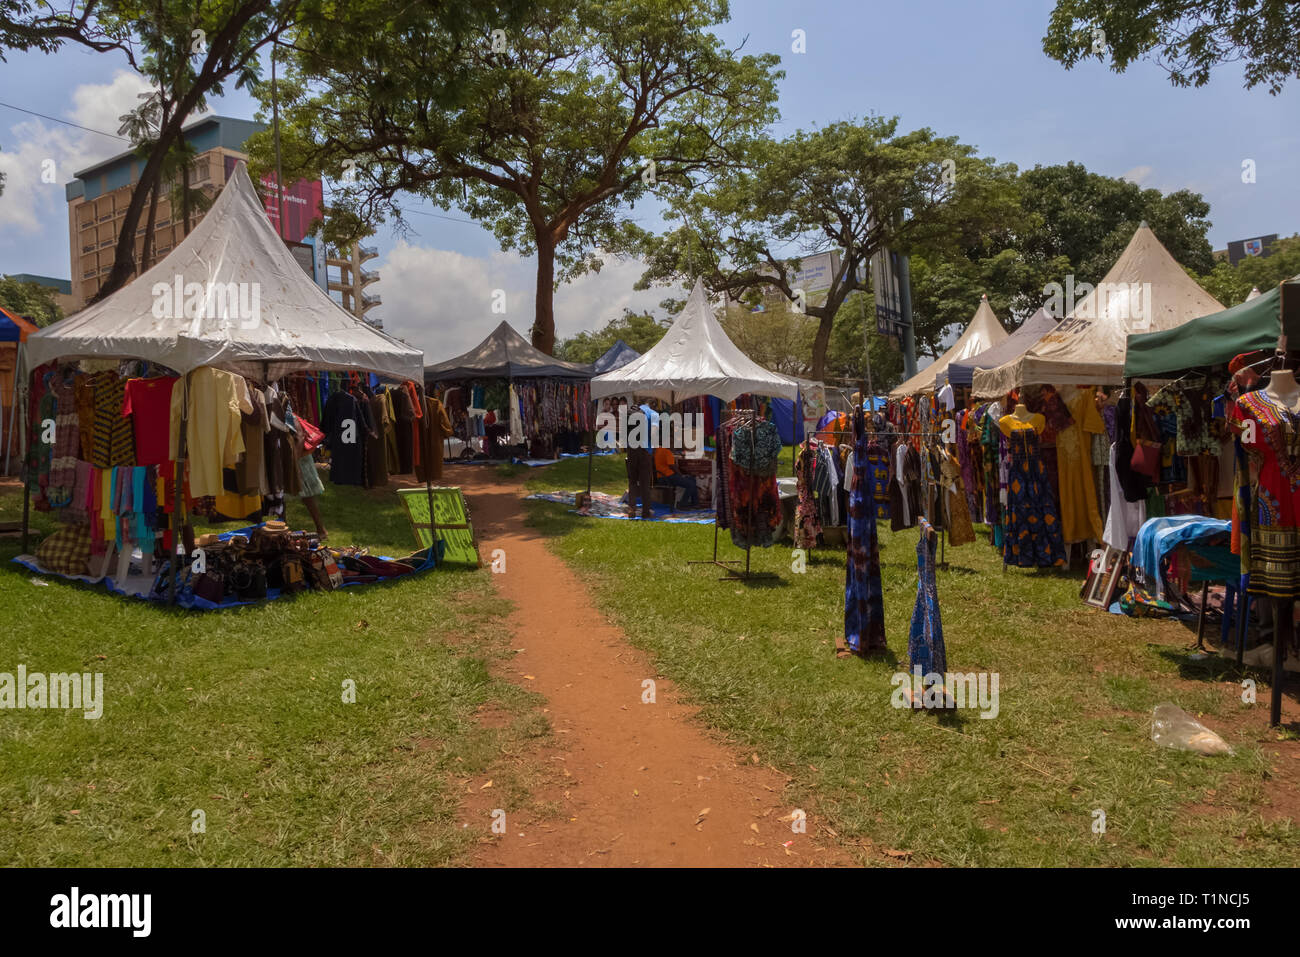 KAMPALA, Uganda - 11. APRIL 2017: Kampala Straße auf diesen kleinen Park in Kampala Road ist ein Basar, wo die Menschen verkaufen, afrikanisches Kunsthandwerk und Kleidung. Stockfoto